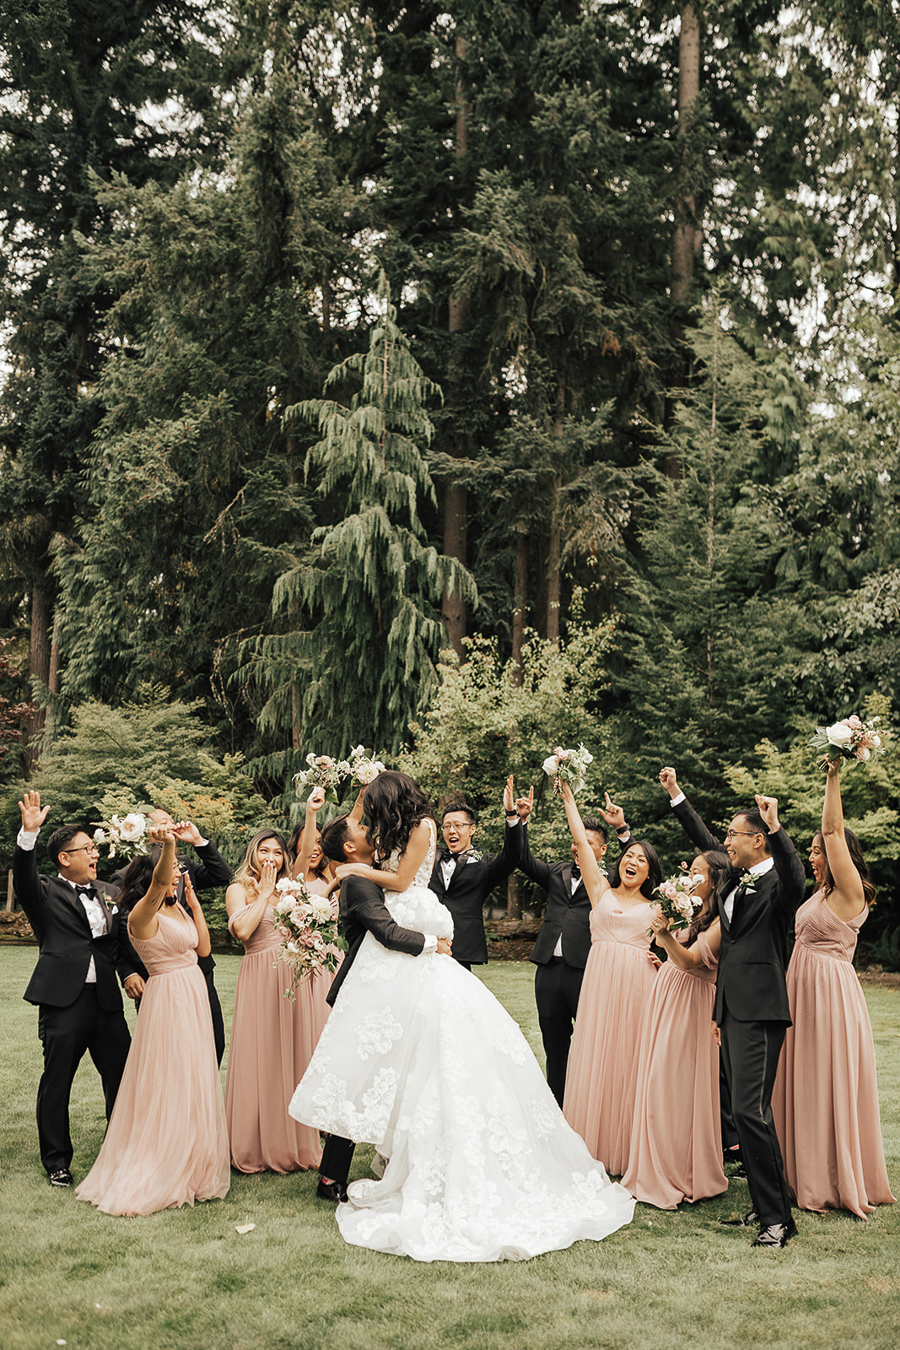 Tips for Incredible Wedding Party Photos